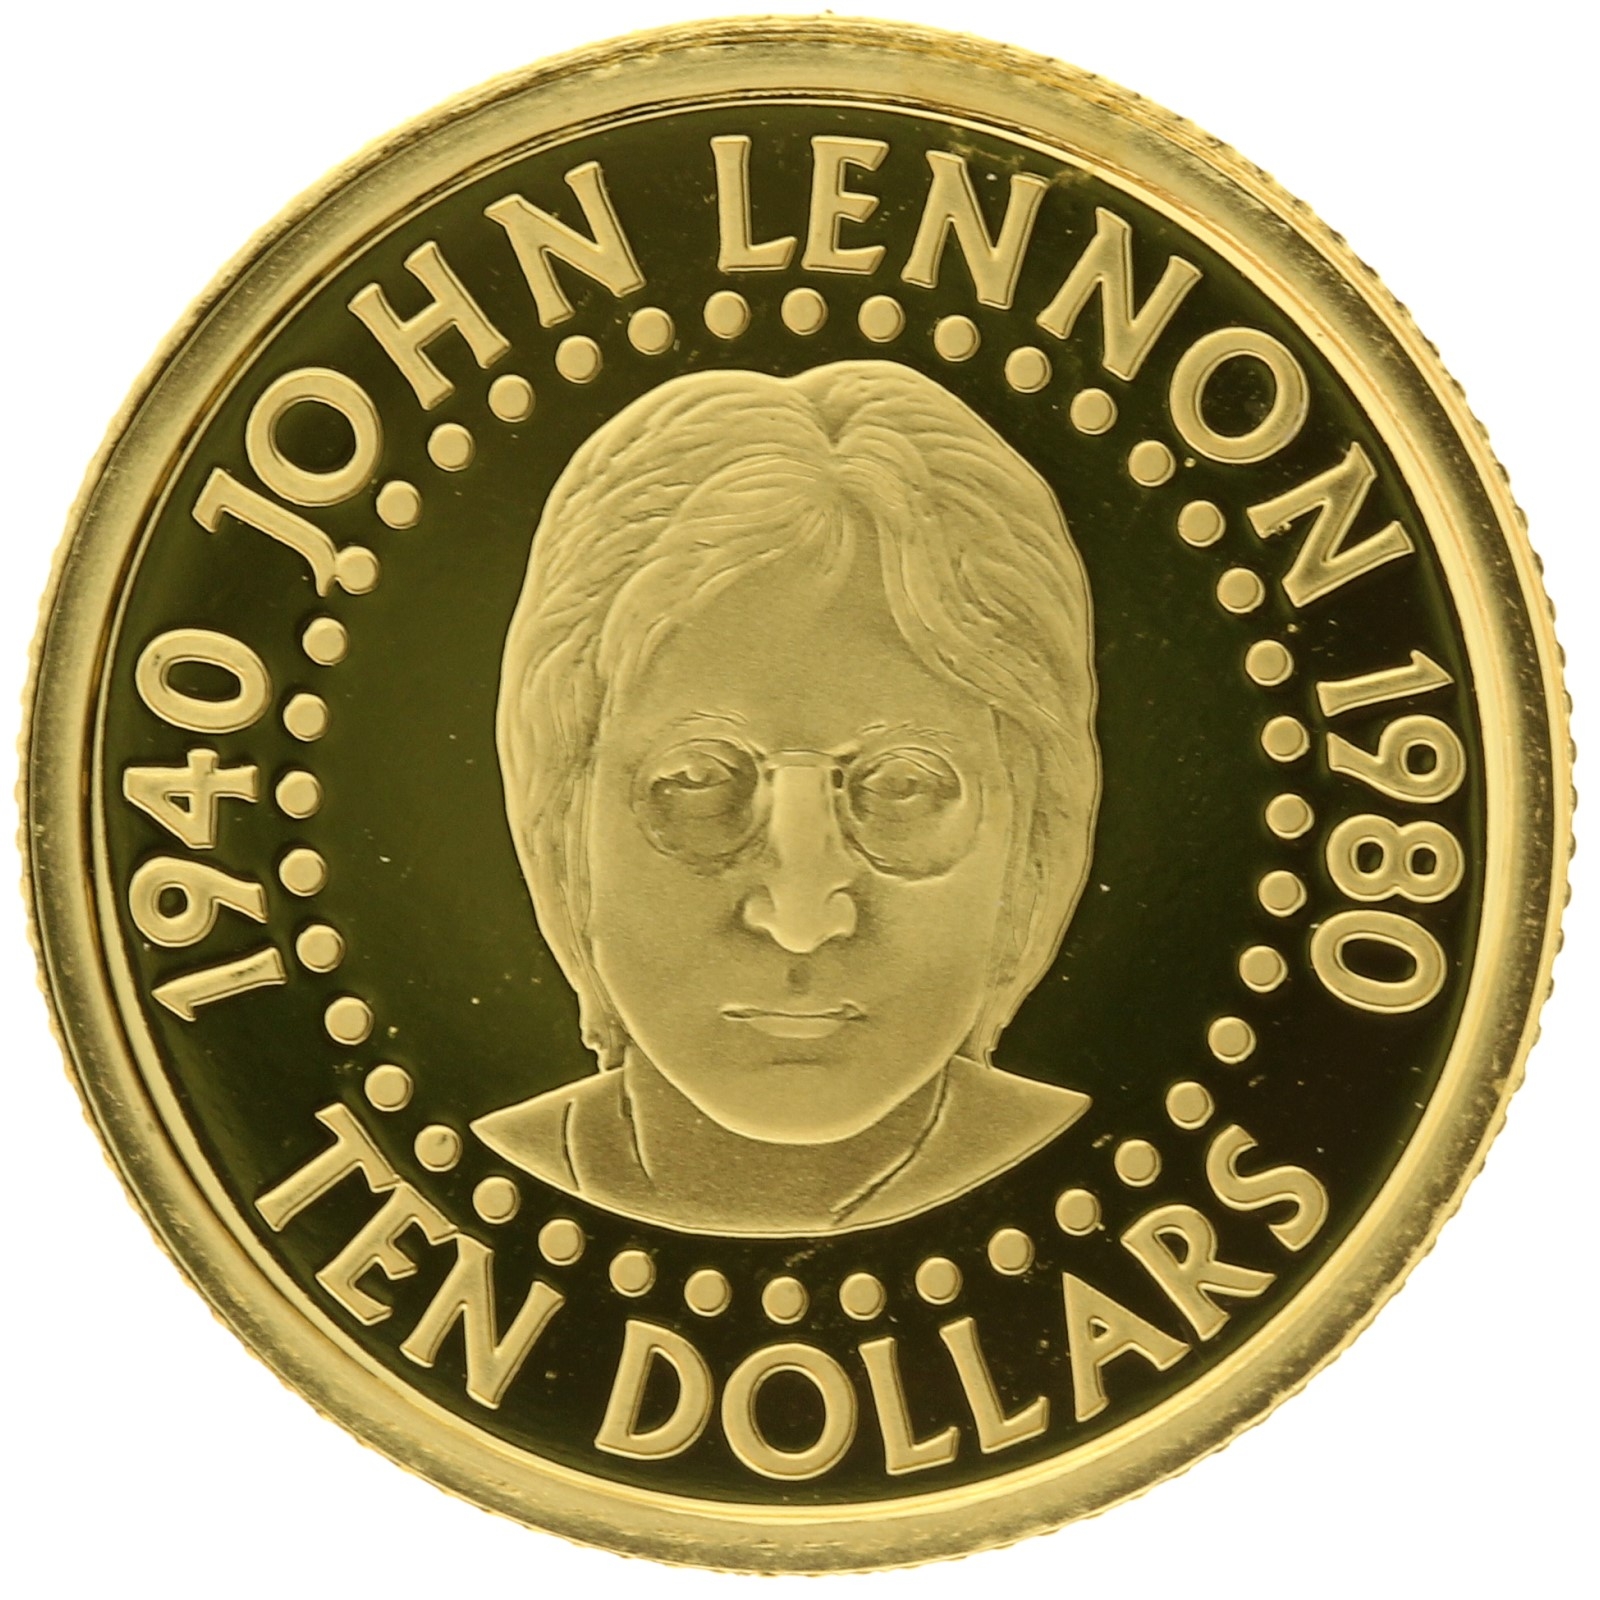 Solomon Islands - 10 dollars - 2005 - John Lennon - 1/25oz